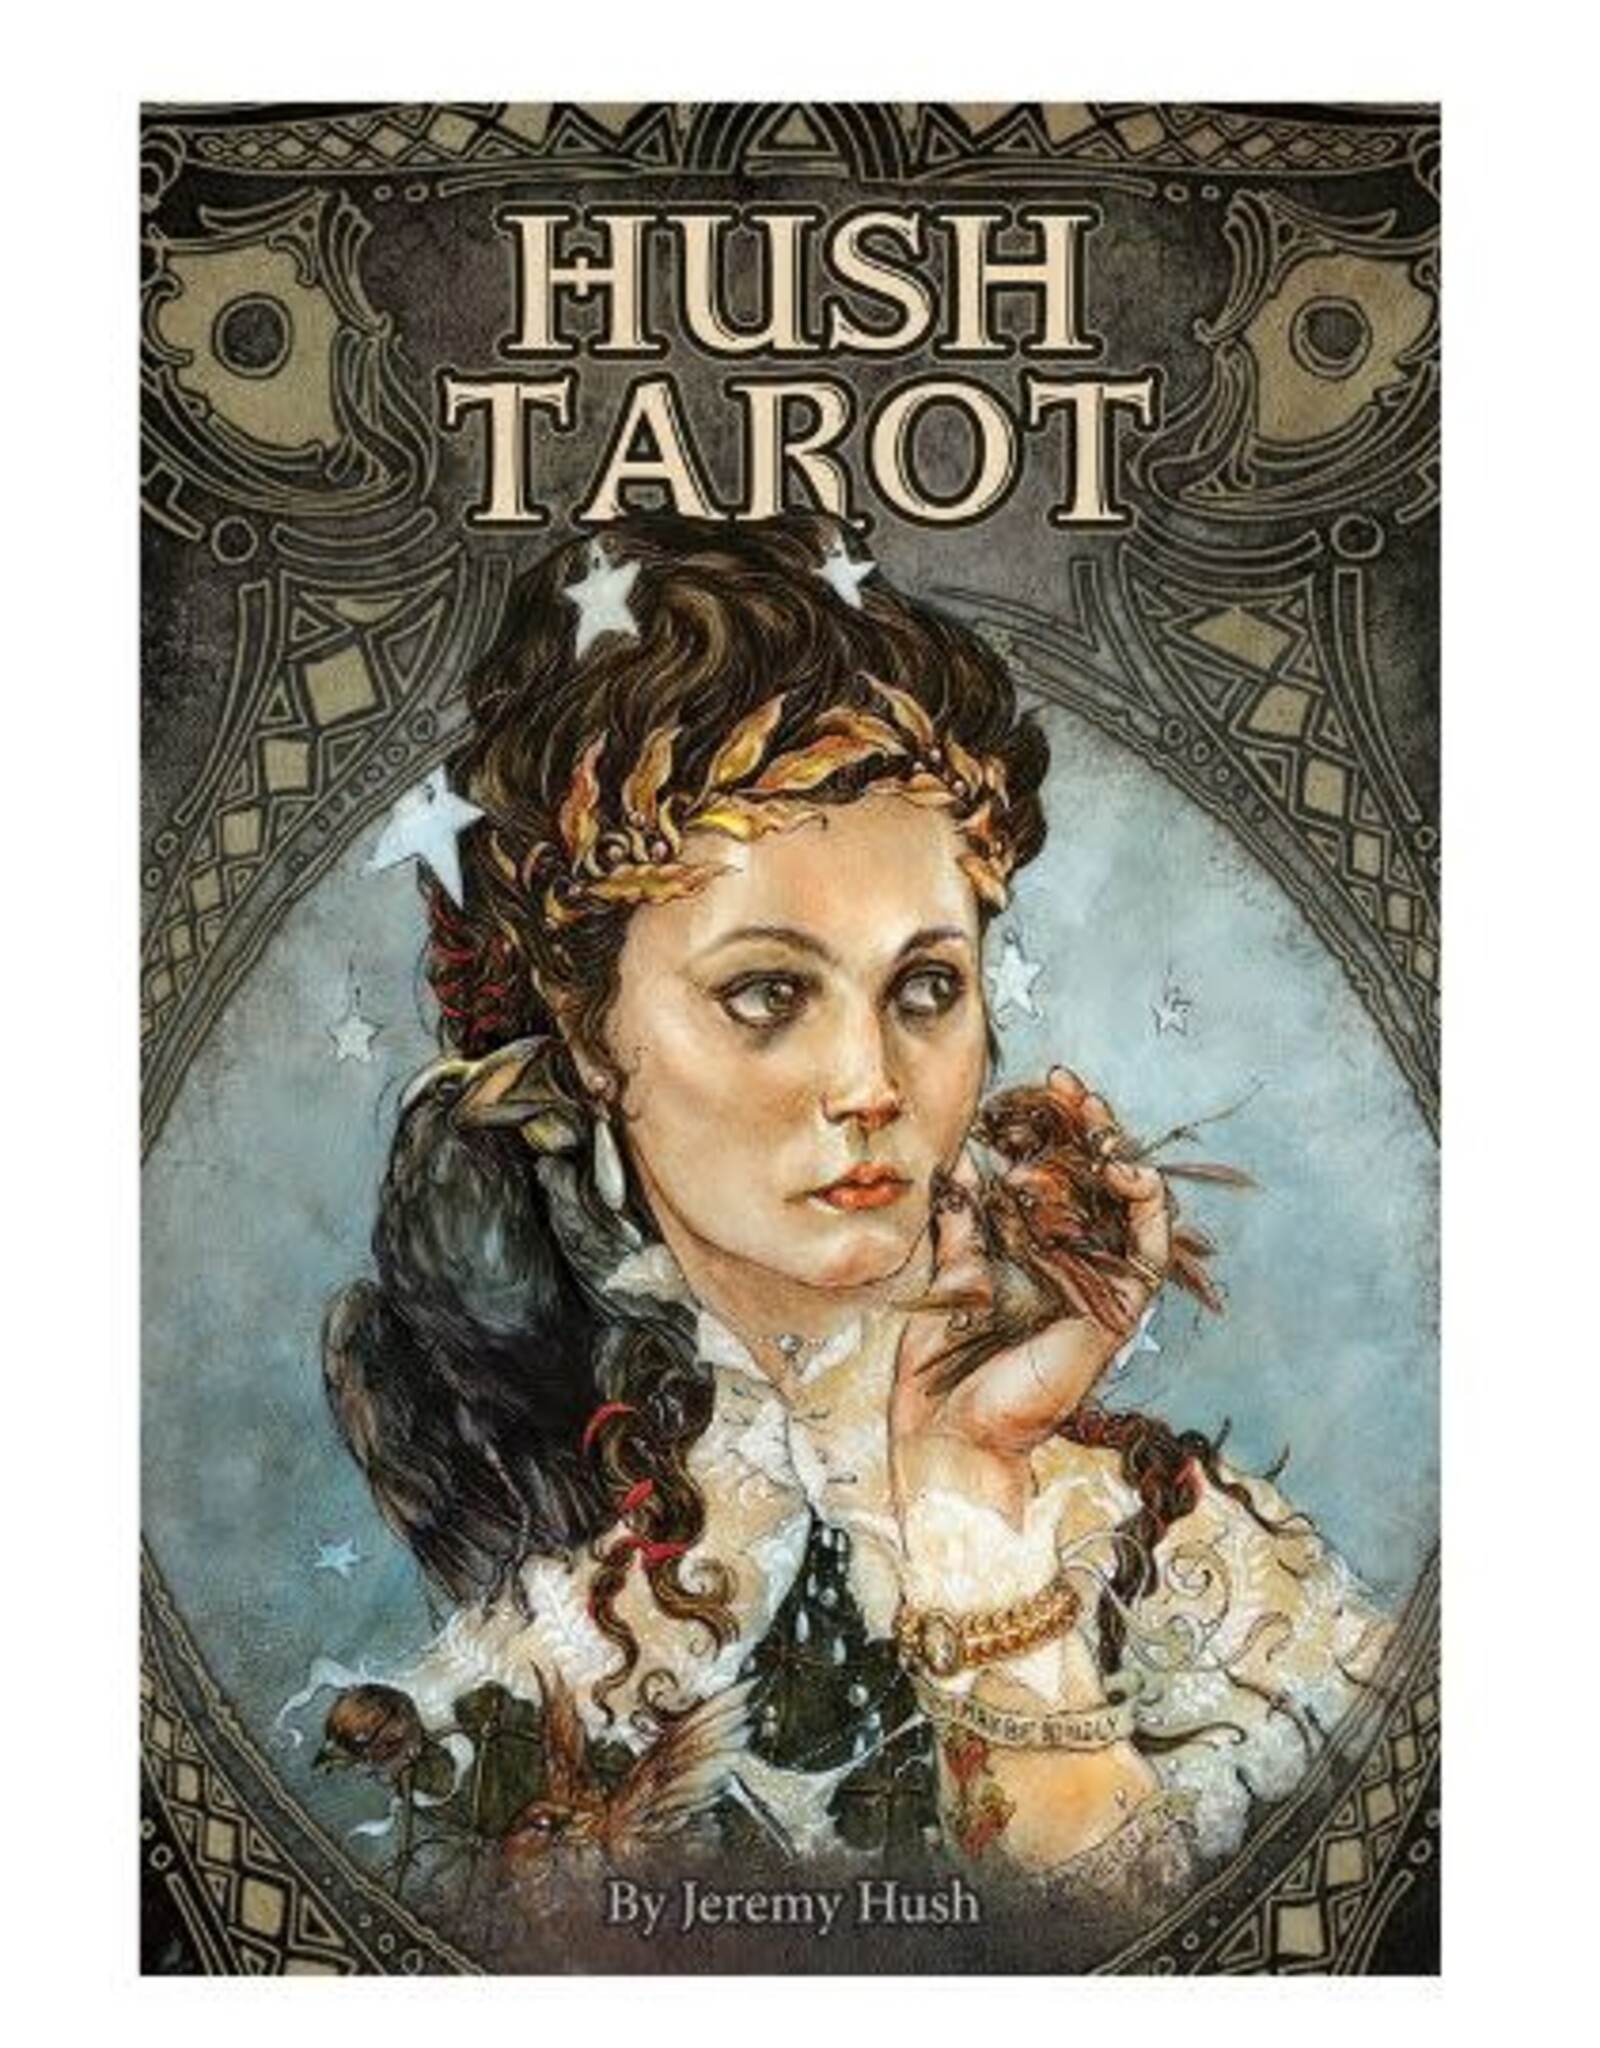 Jeremy Hush Hush Tarot by Jeremy Hush